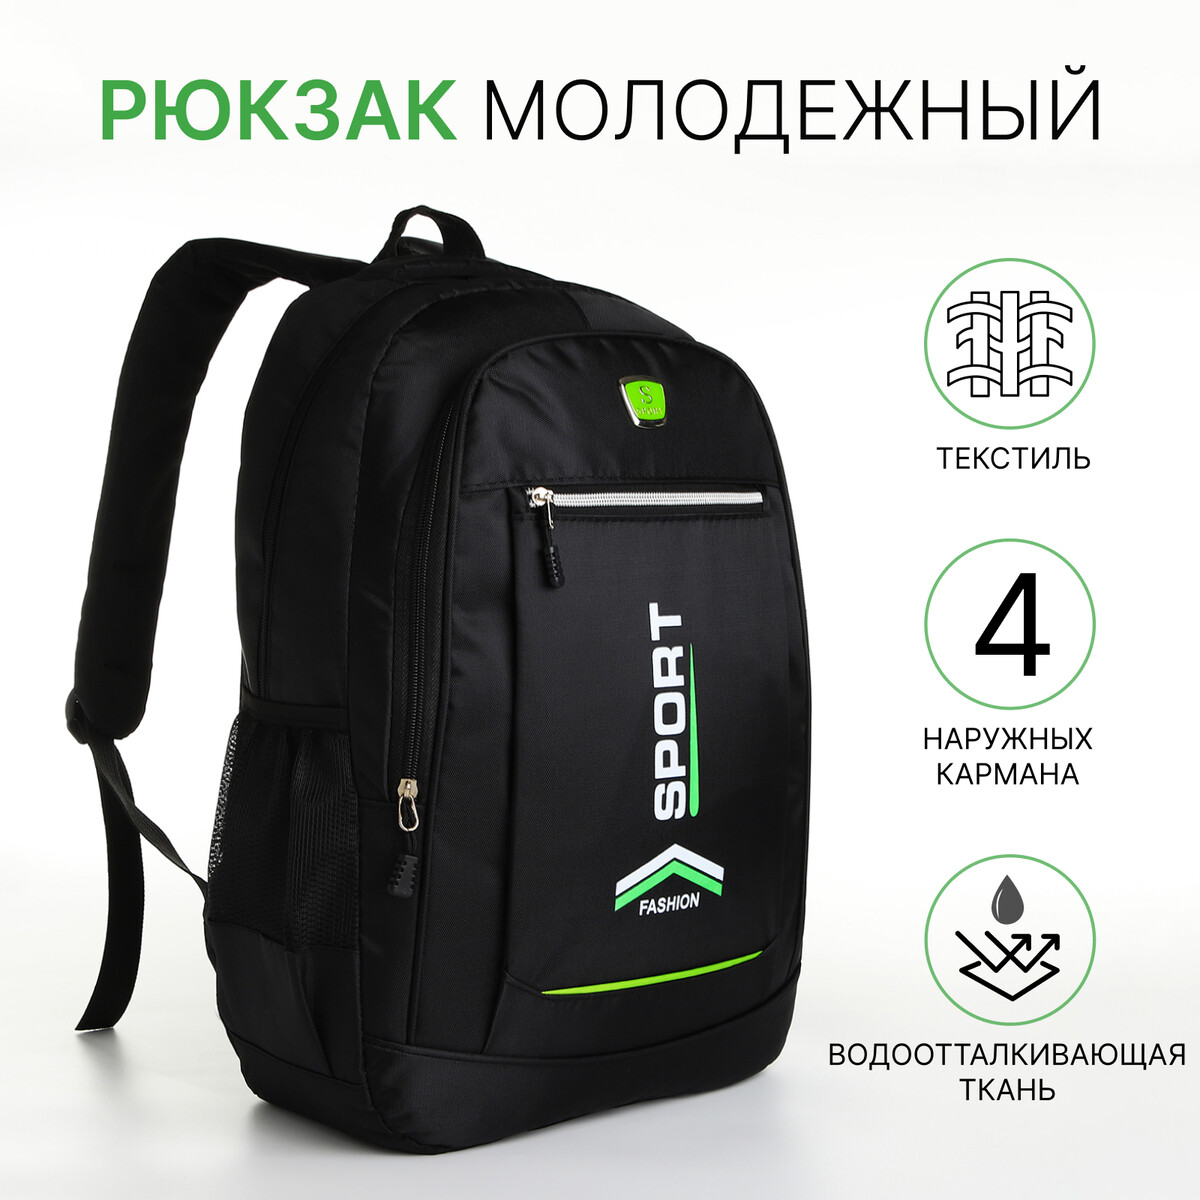 Рюкзак молодежный на молнии, 4 кармана, цвет черный/зеленый